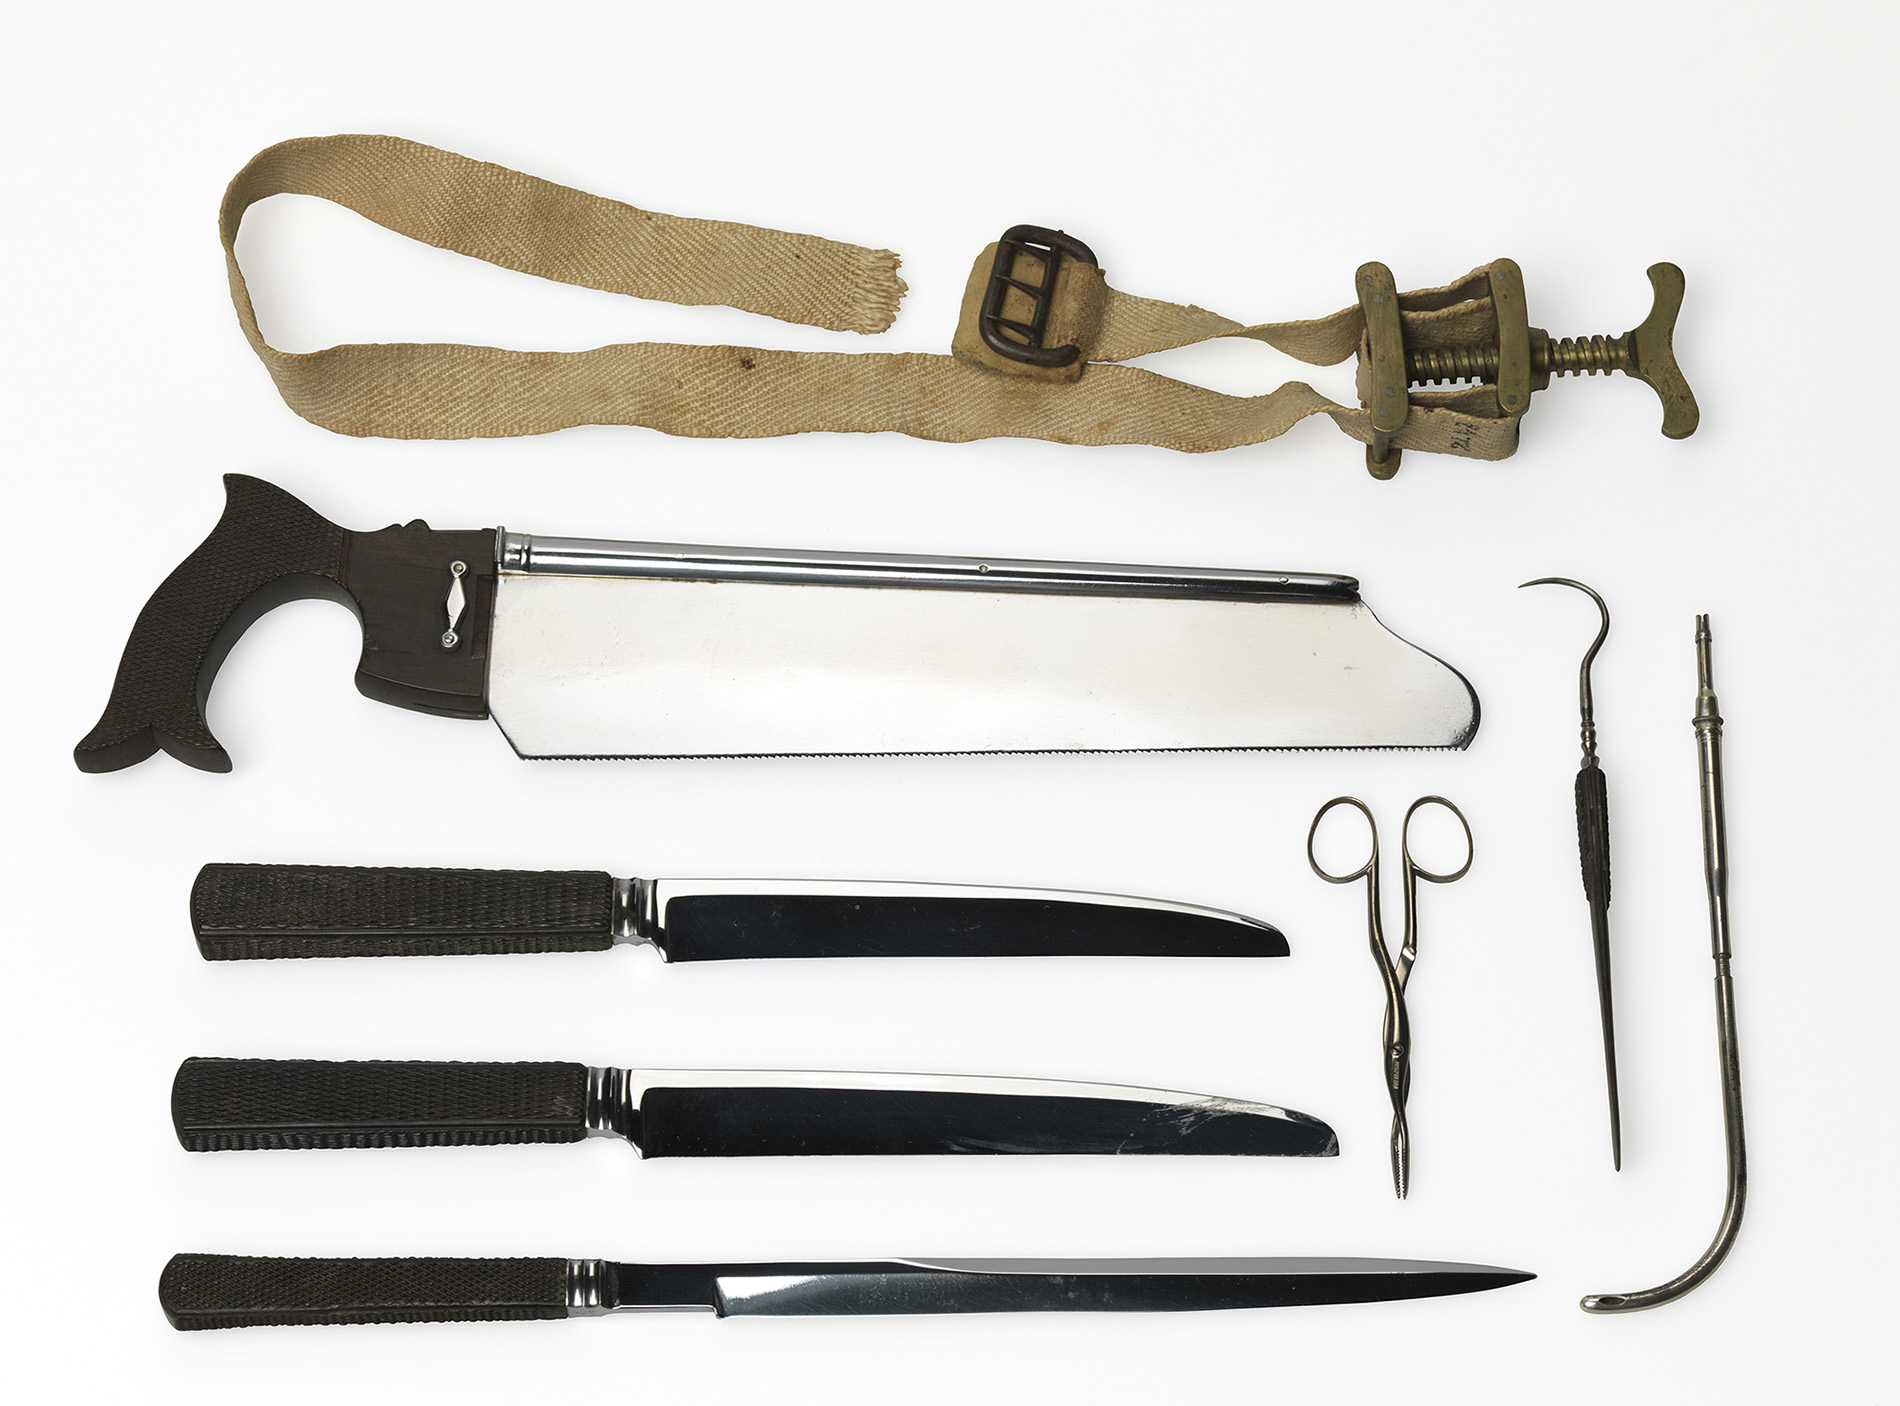 Civil War surgeon's instruments